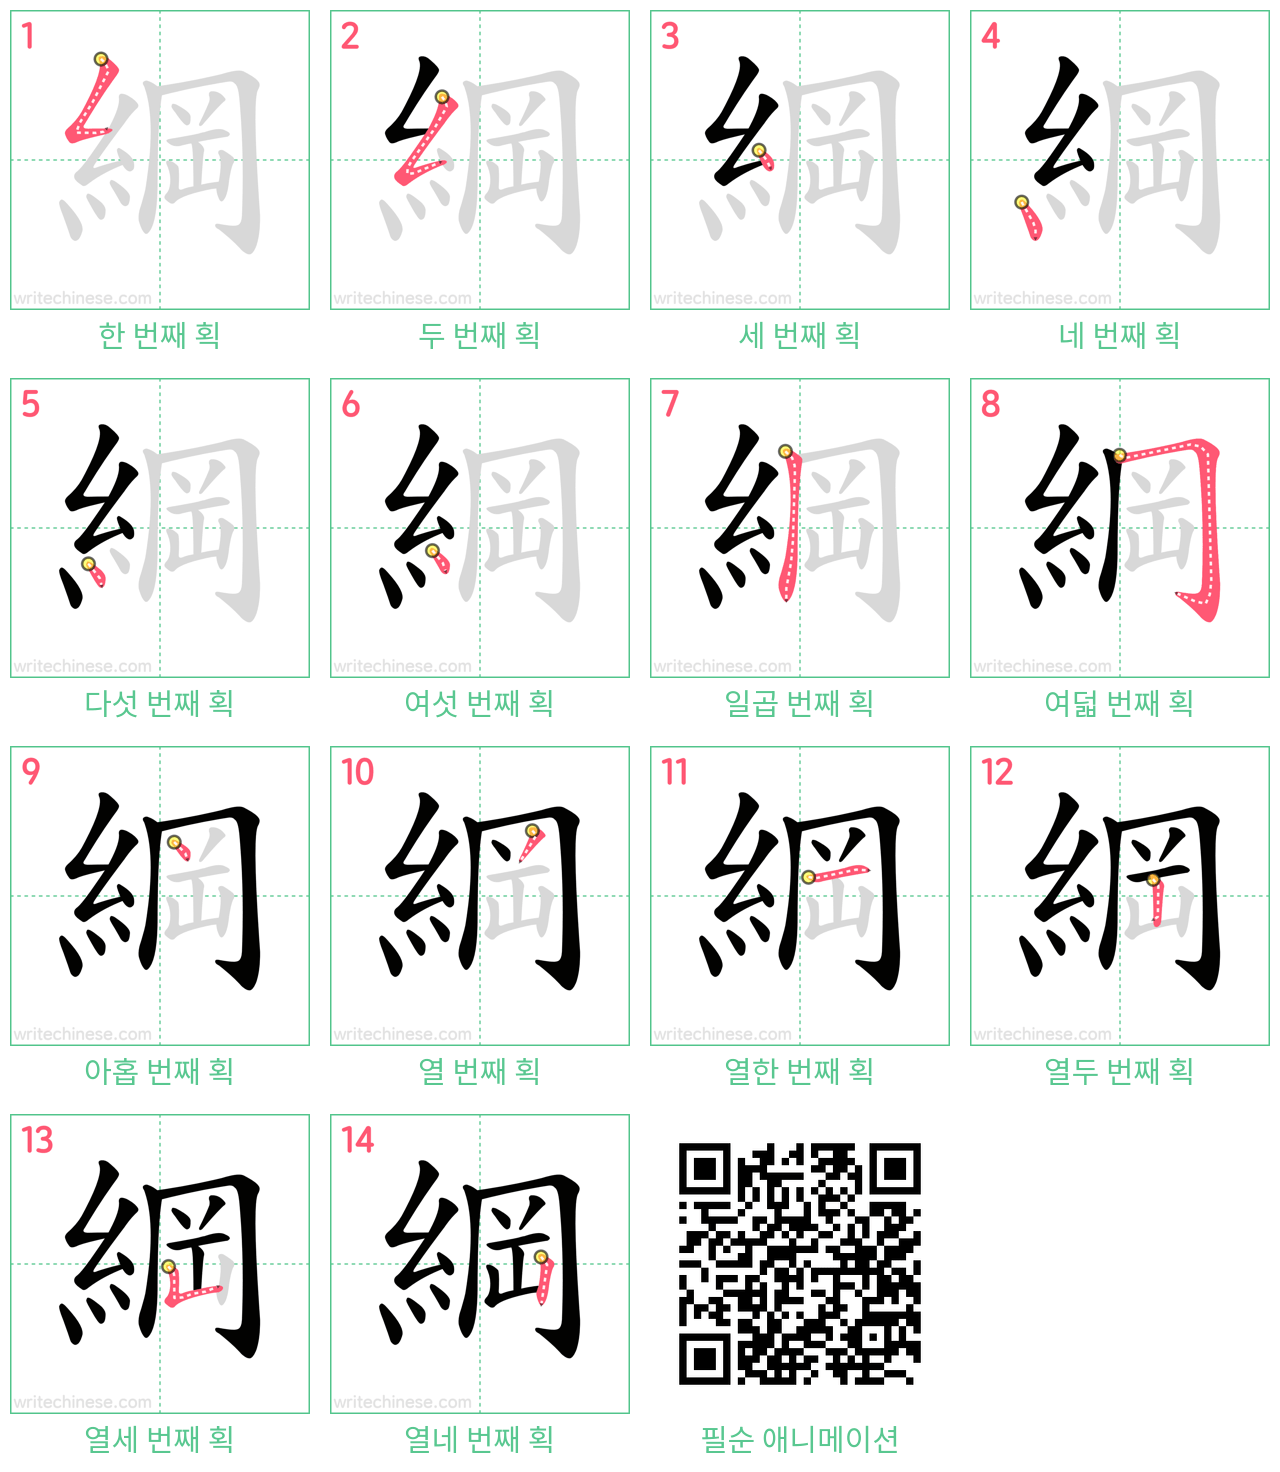 綱 step-by-step stroke order diagrams